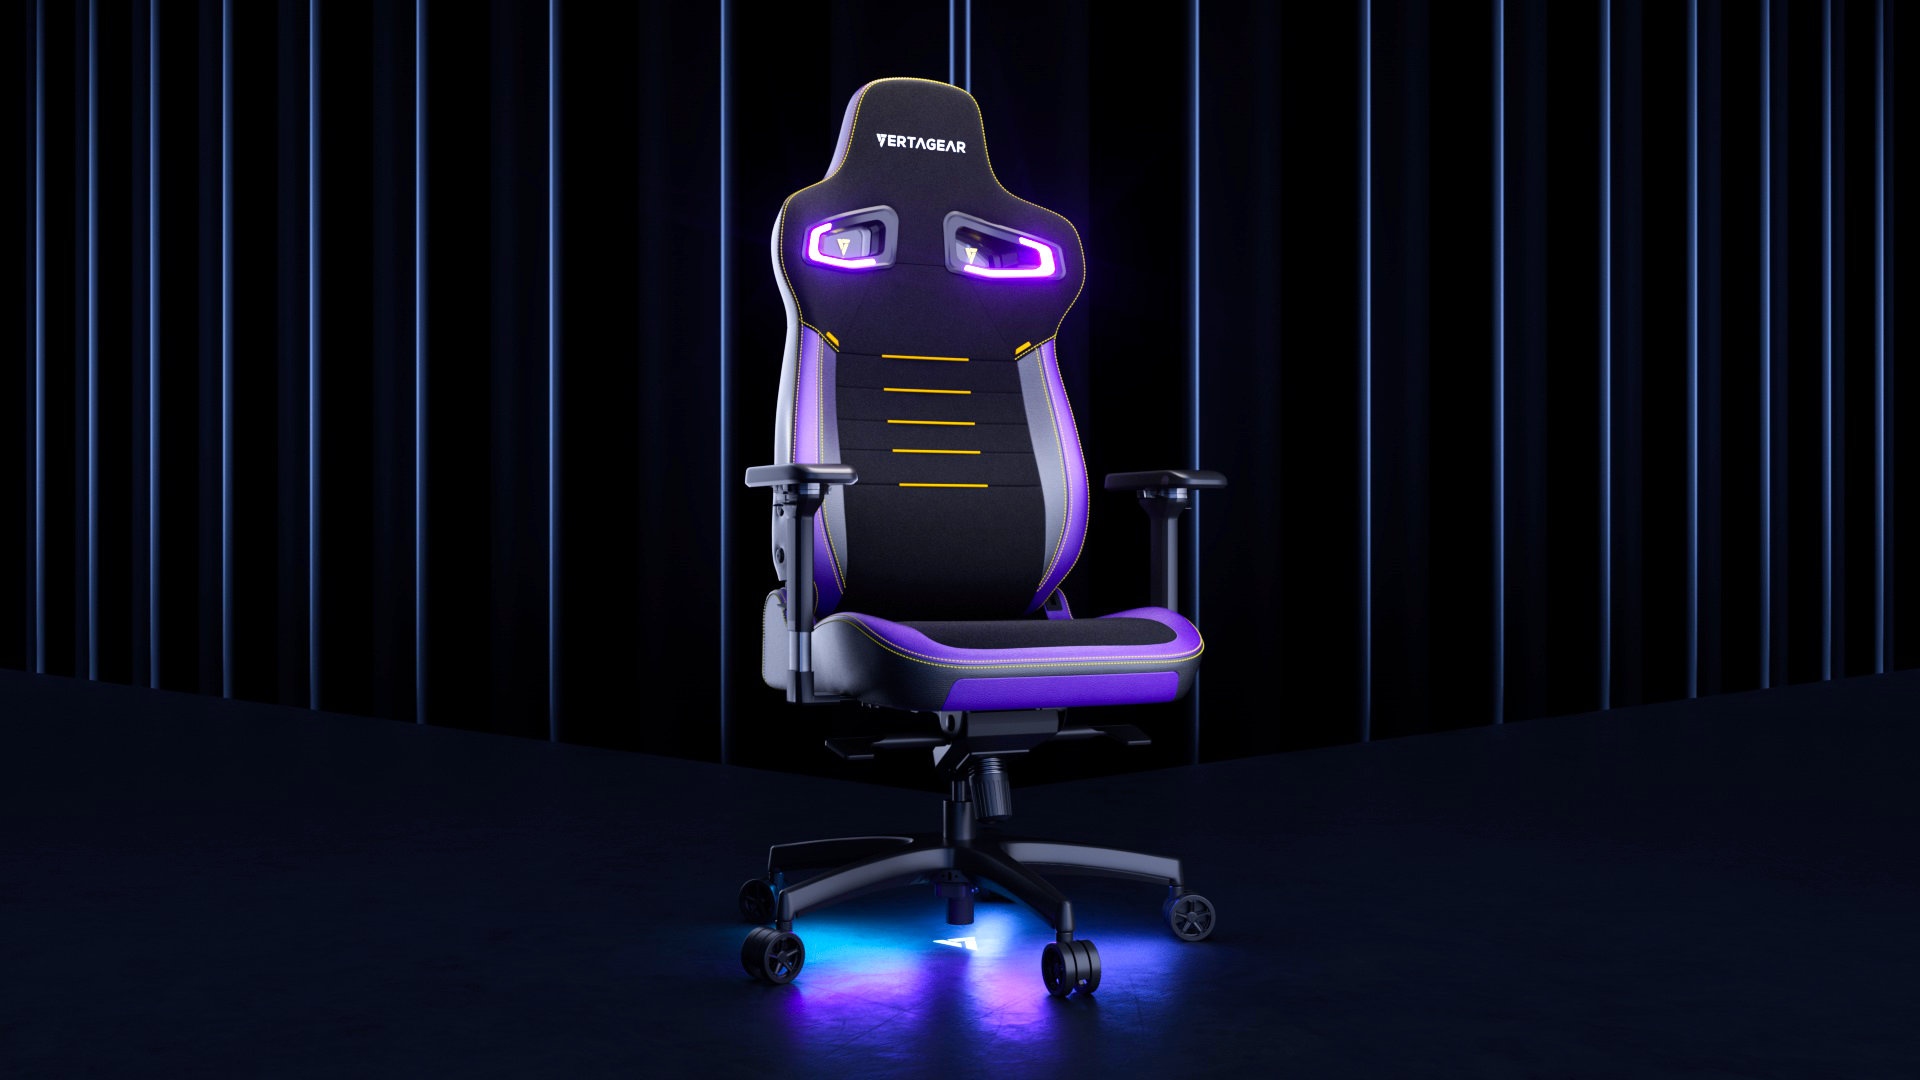 Лучшее игровое кресло: Vertagear. На изображении показано игровое кресло со светодиодной подсветкой.